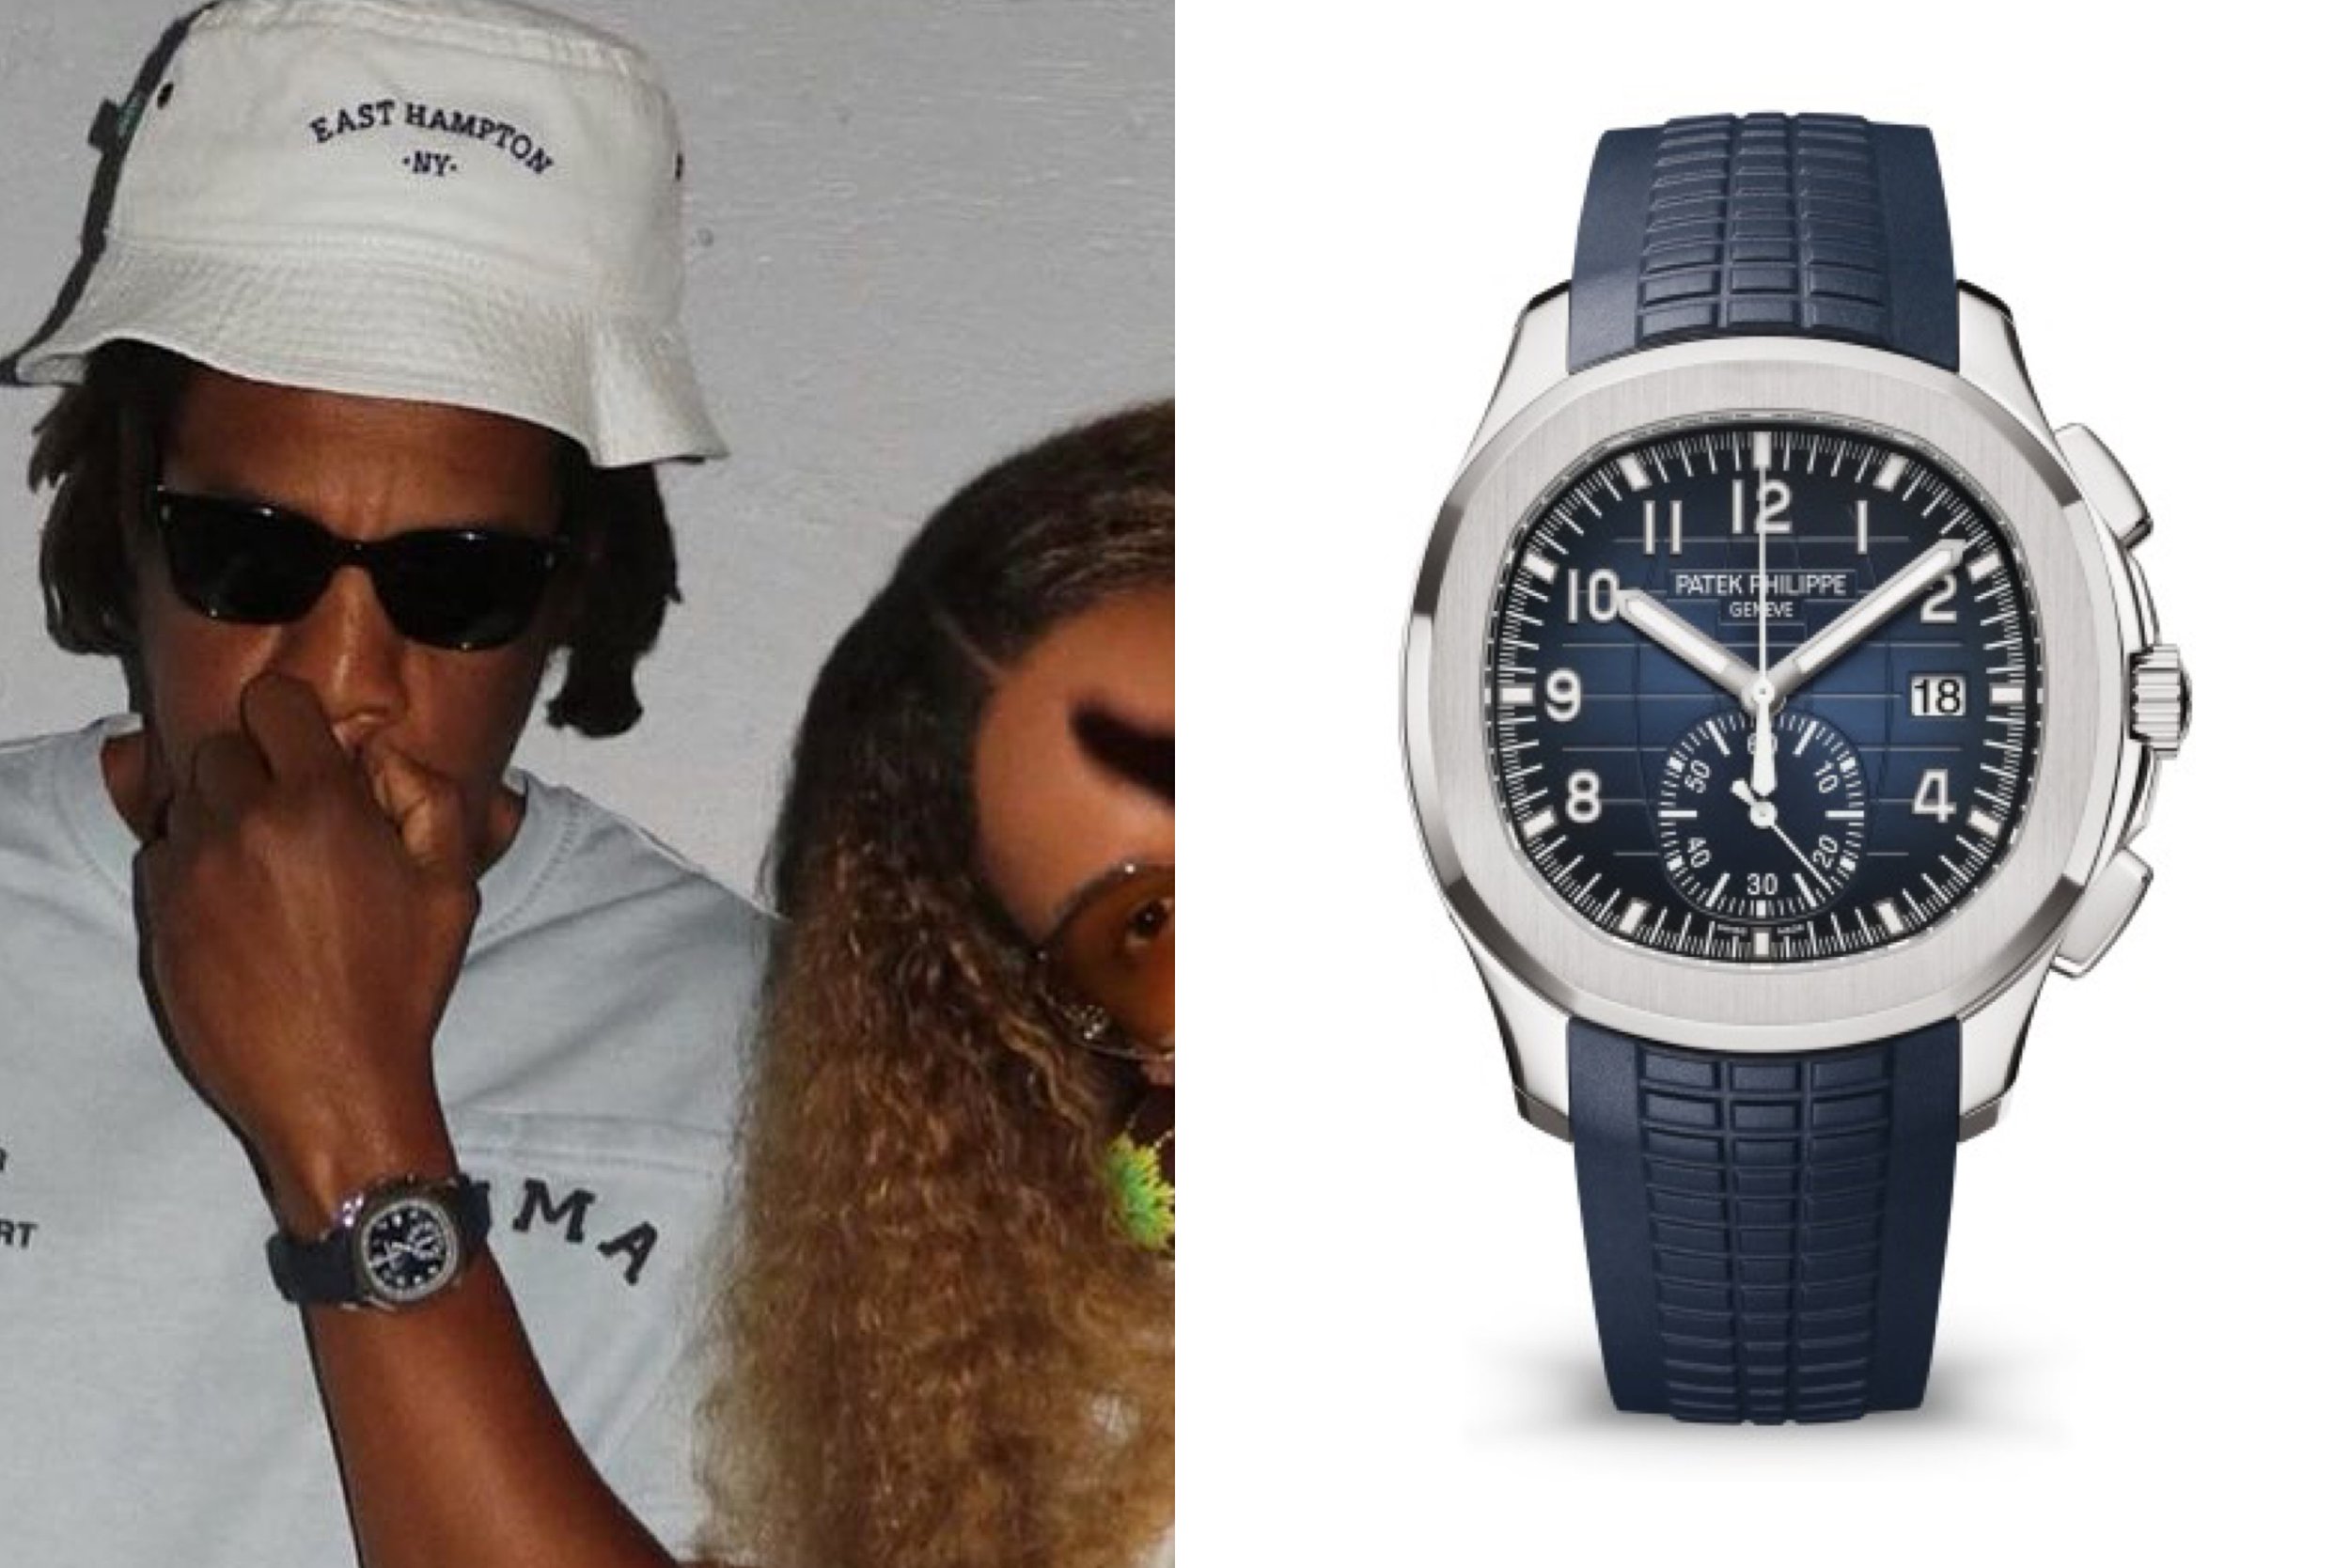 Jay-Z Wears the $.65 Million Tiffany & Co. x Patek Philippe Watch